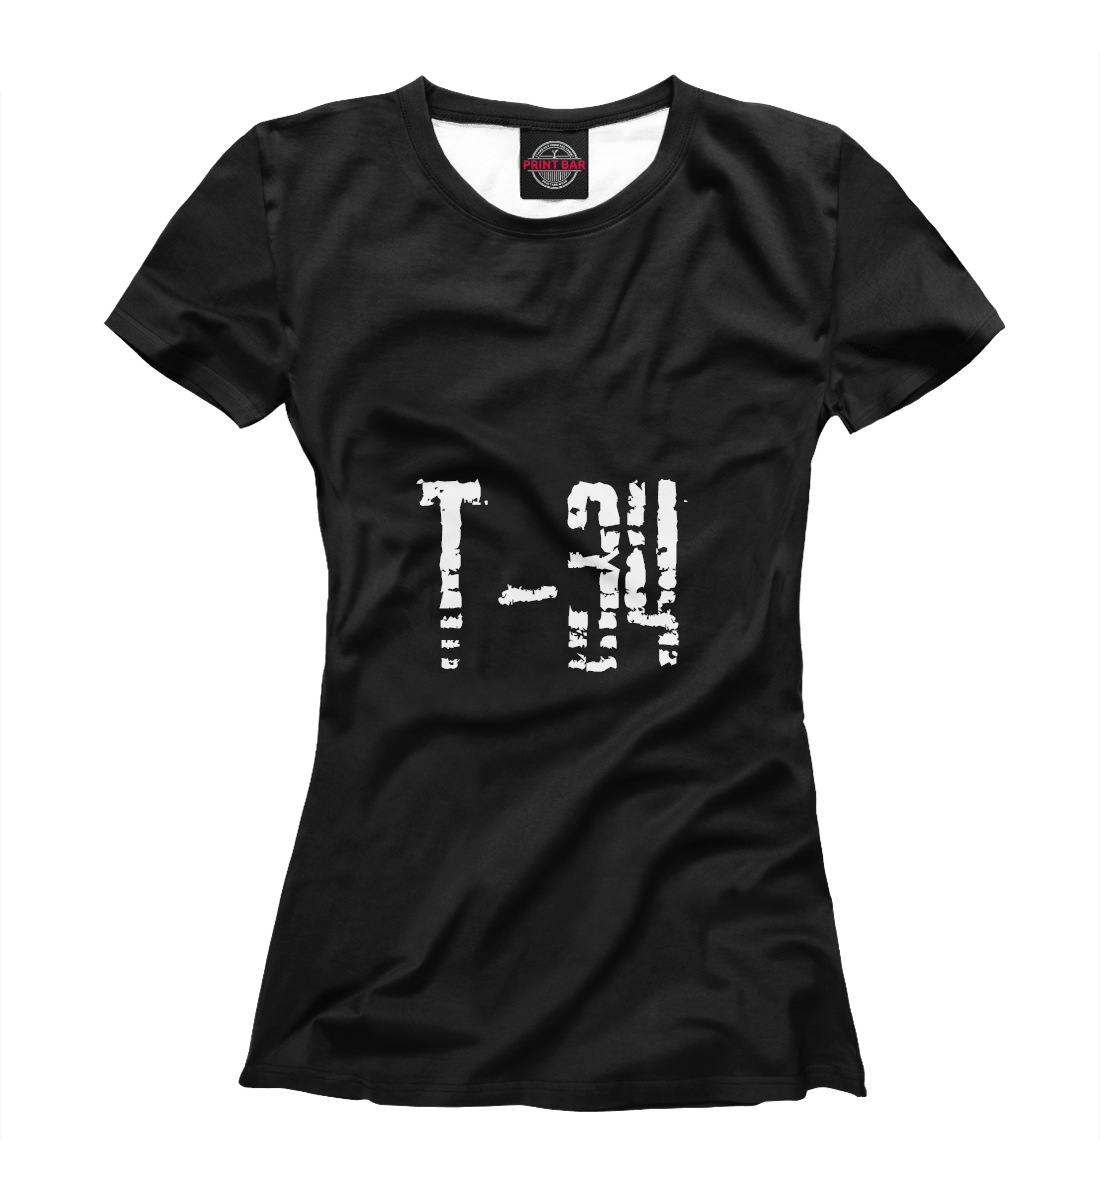 Футболка Т-34 для женщин, артикул: TNK-764578-fut-1mp